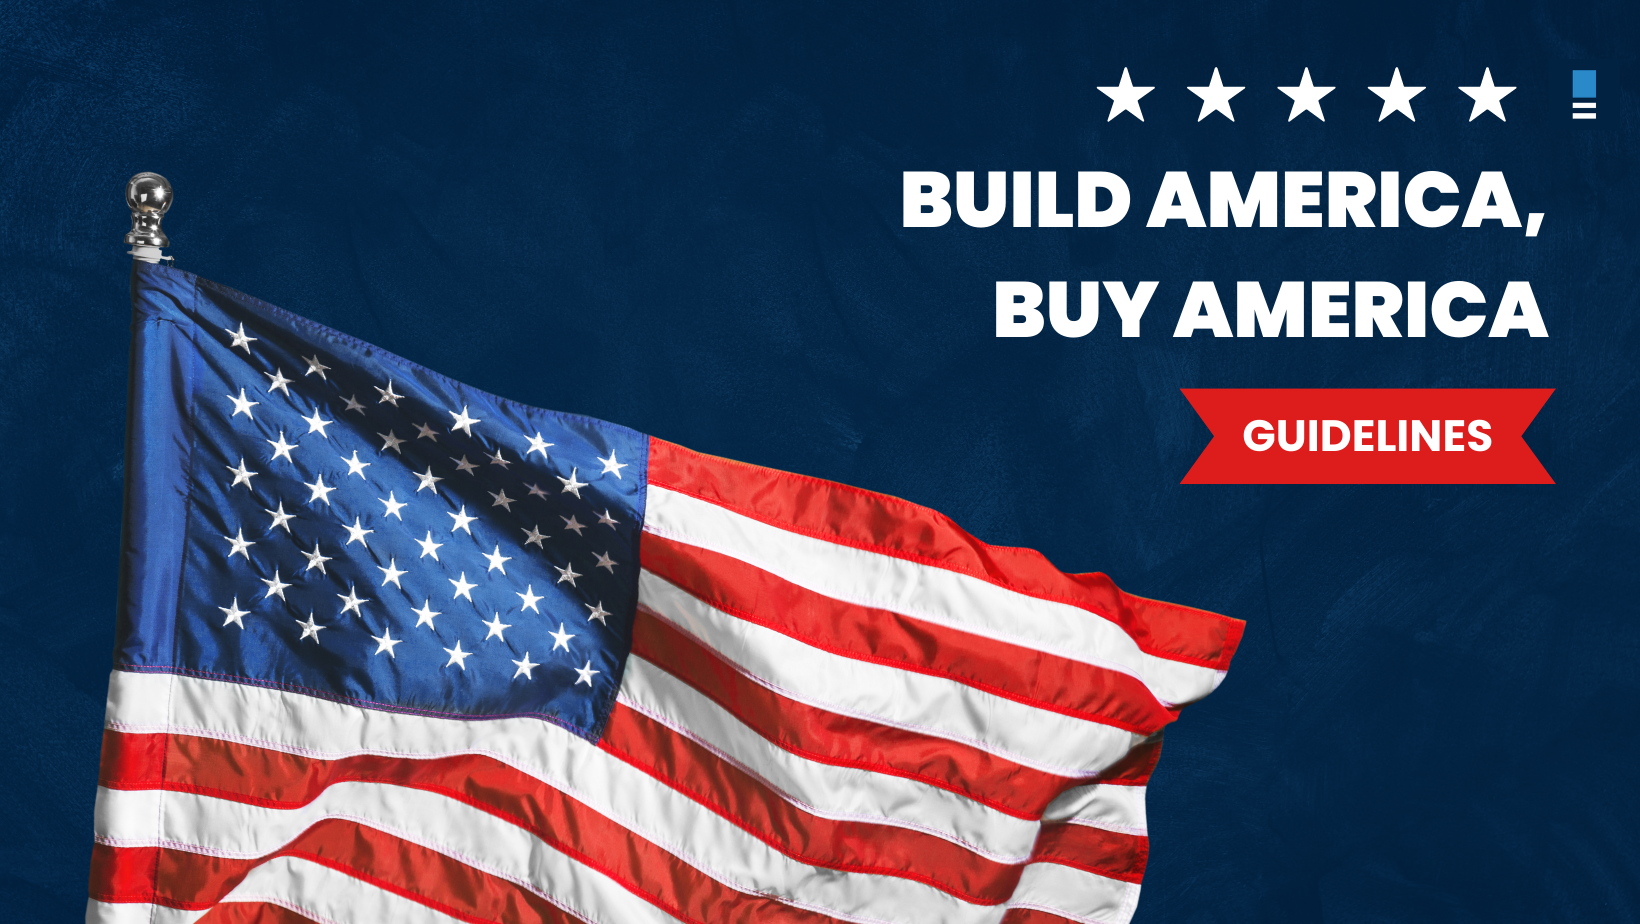 Buy American Build America Guidelines 